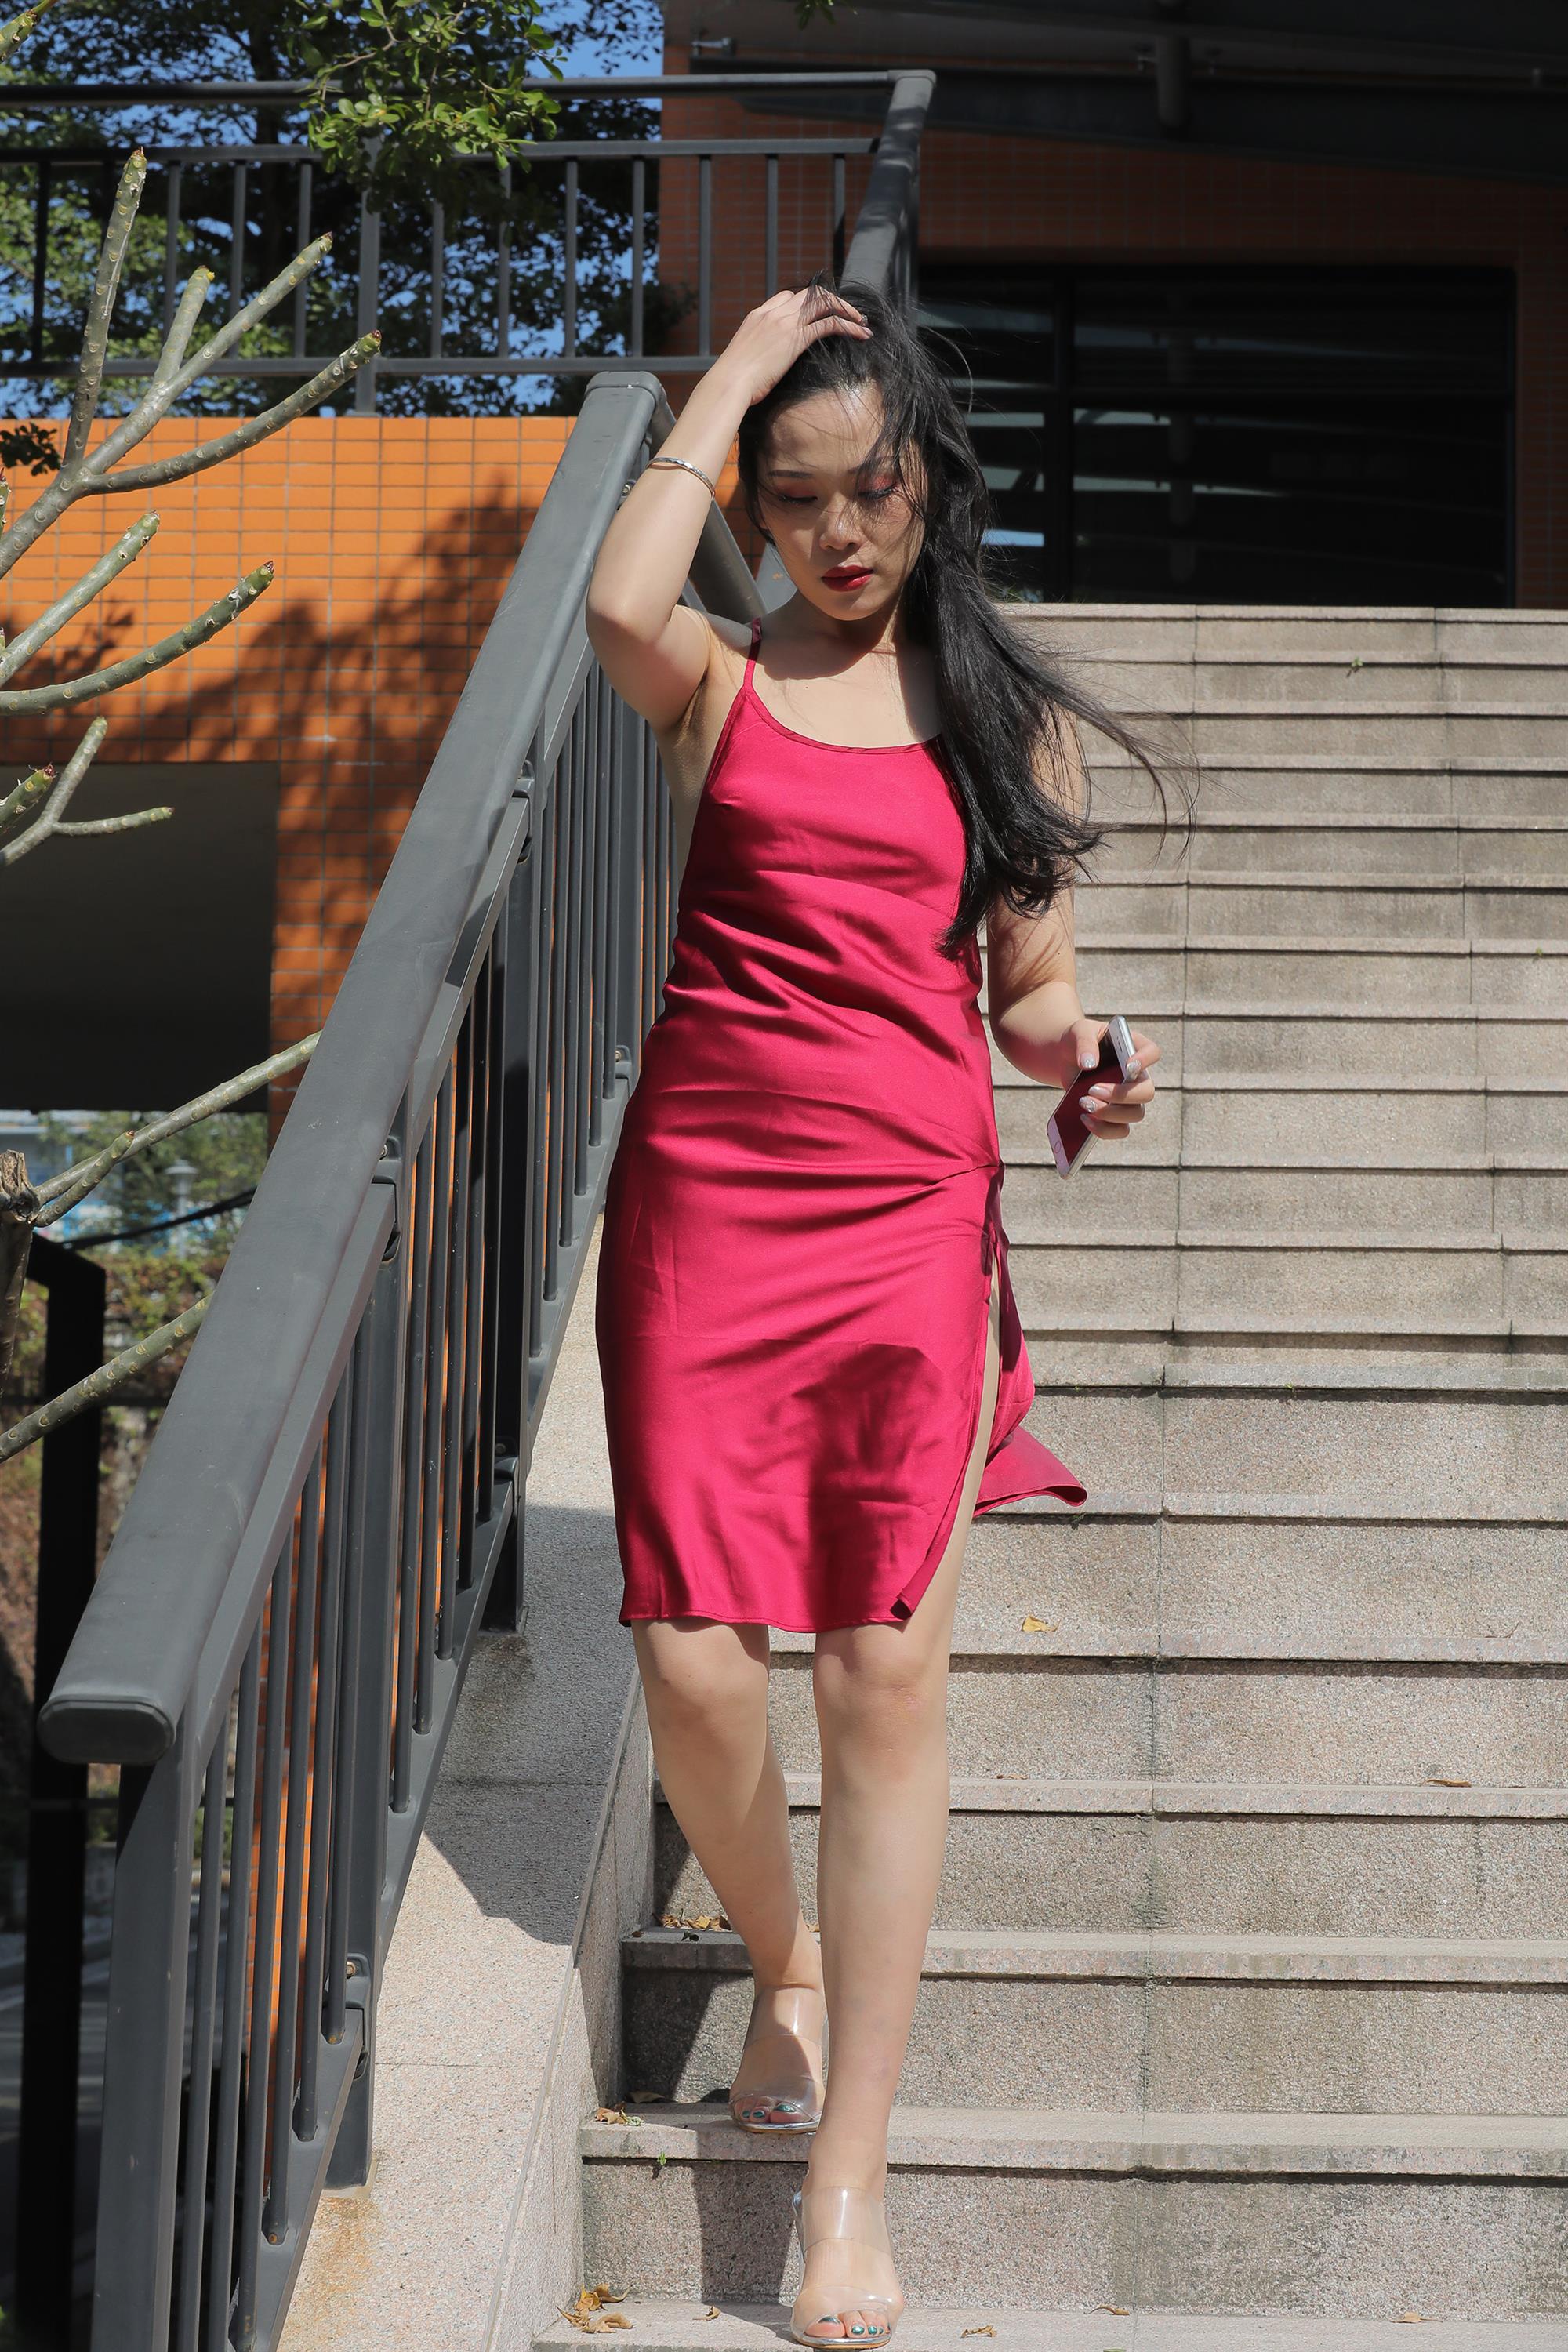 Street beauty in a red dress - 15.jpg